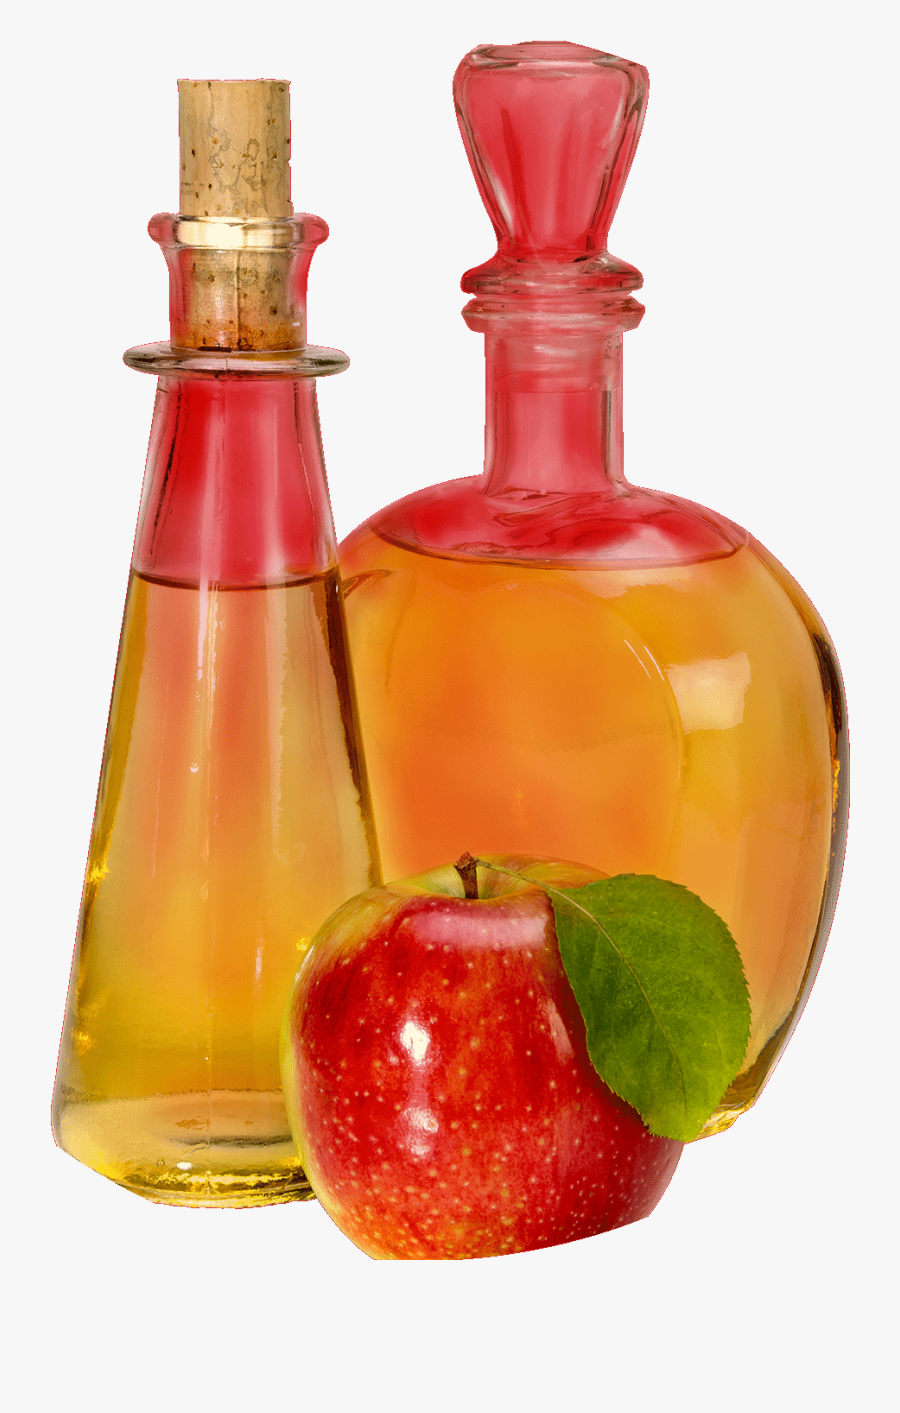 Cleansing Apple Cider Vinegar - Apple Cider Vinegar Png, Transparent Clipart